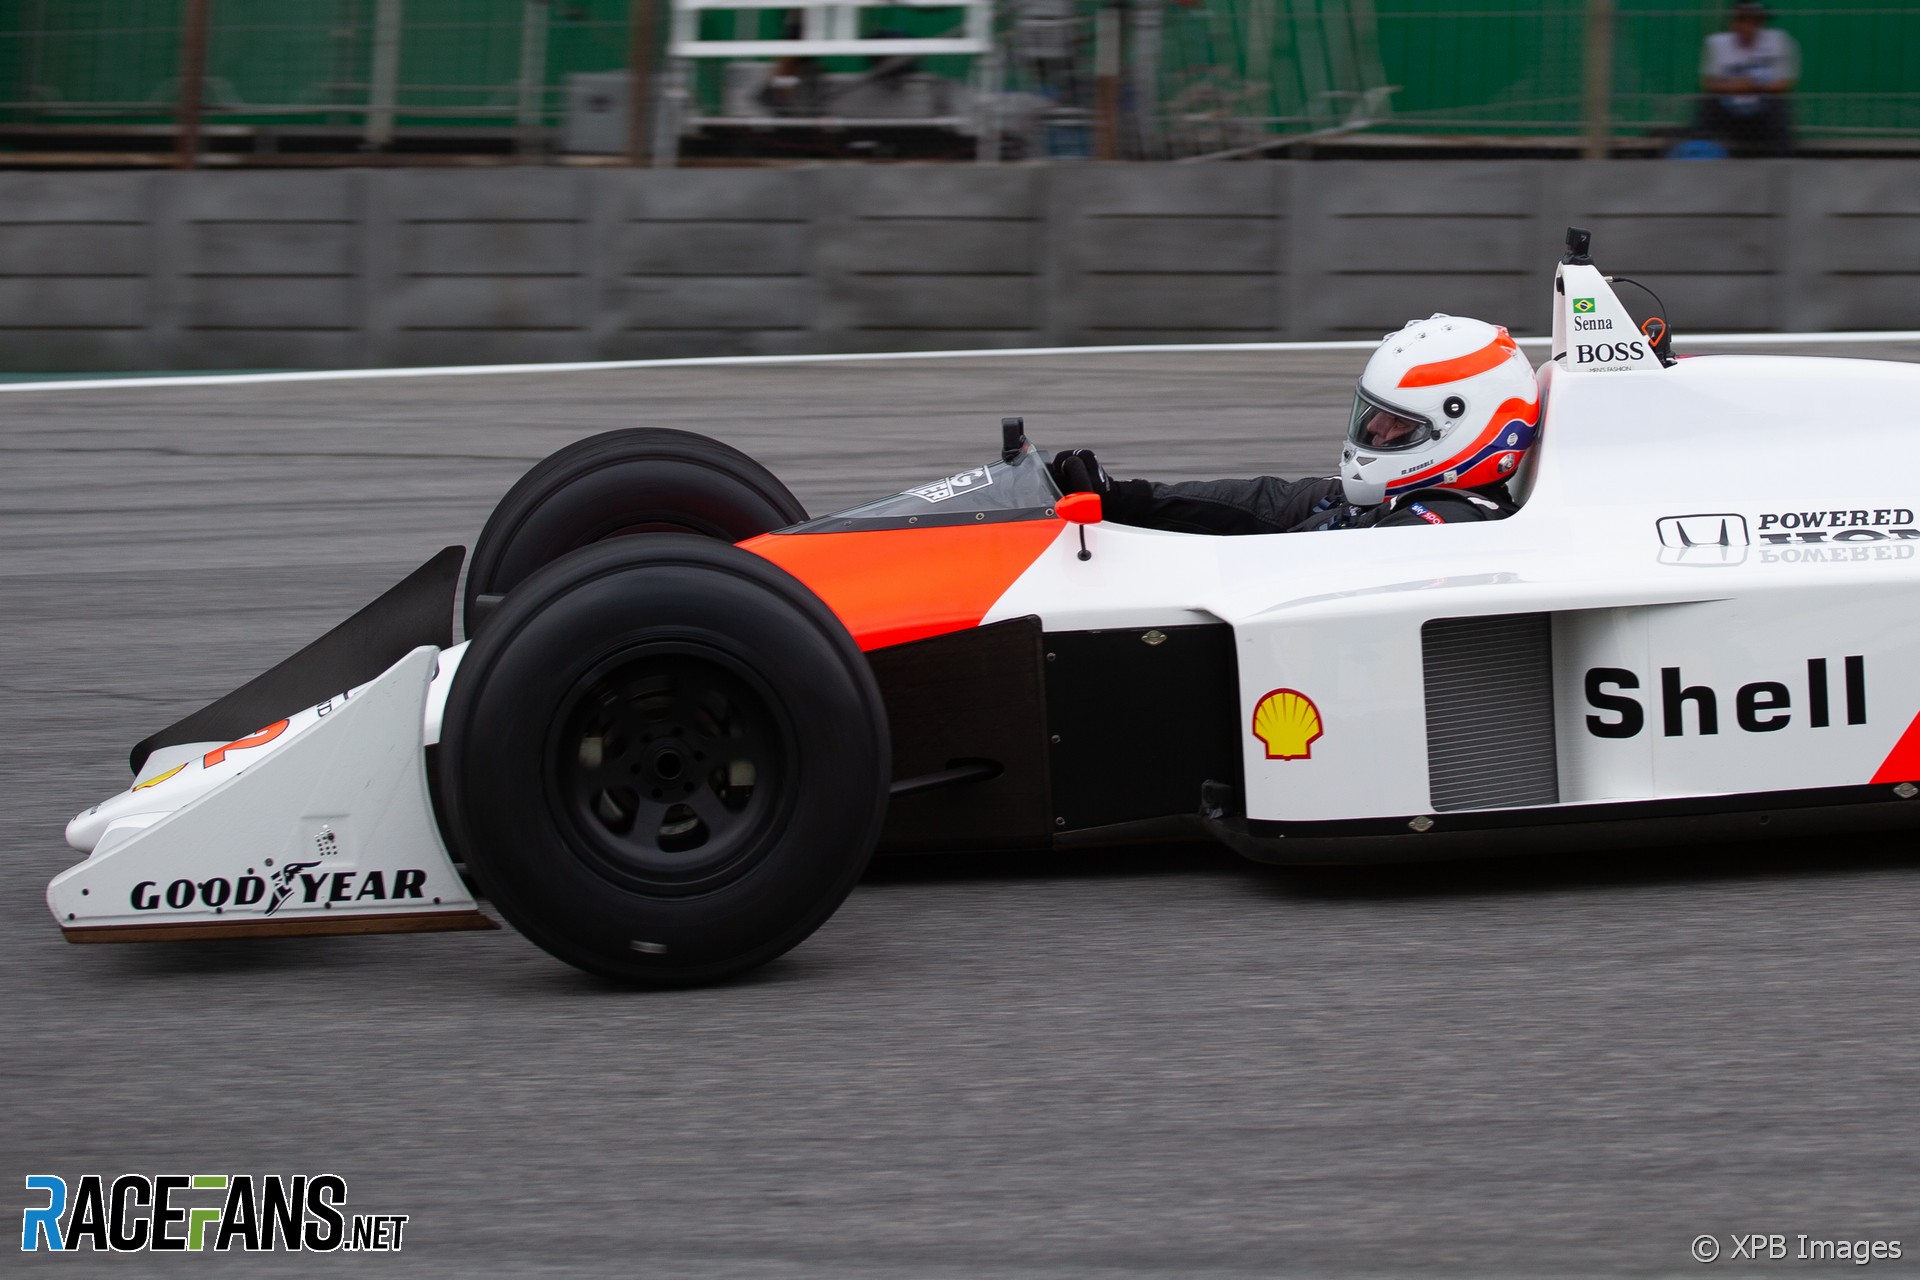 Martin Brundle, McLaren MP4/4, Interlagos, 2019